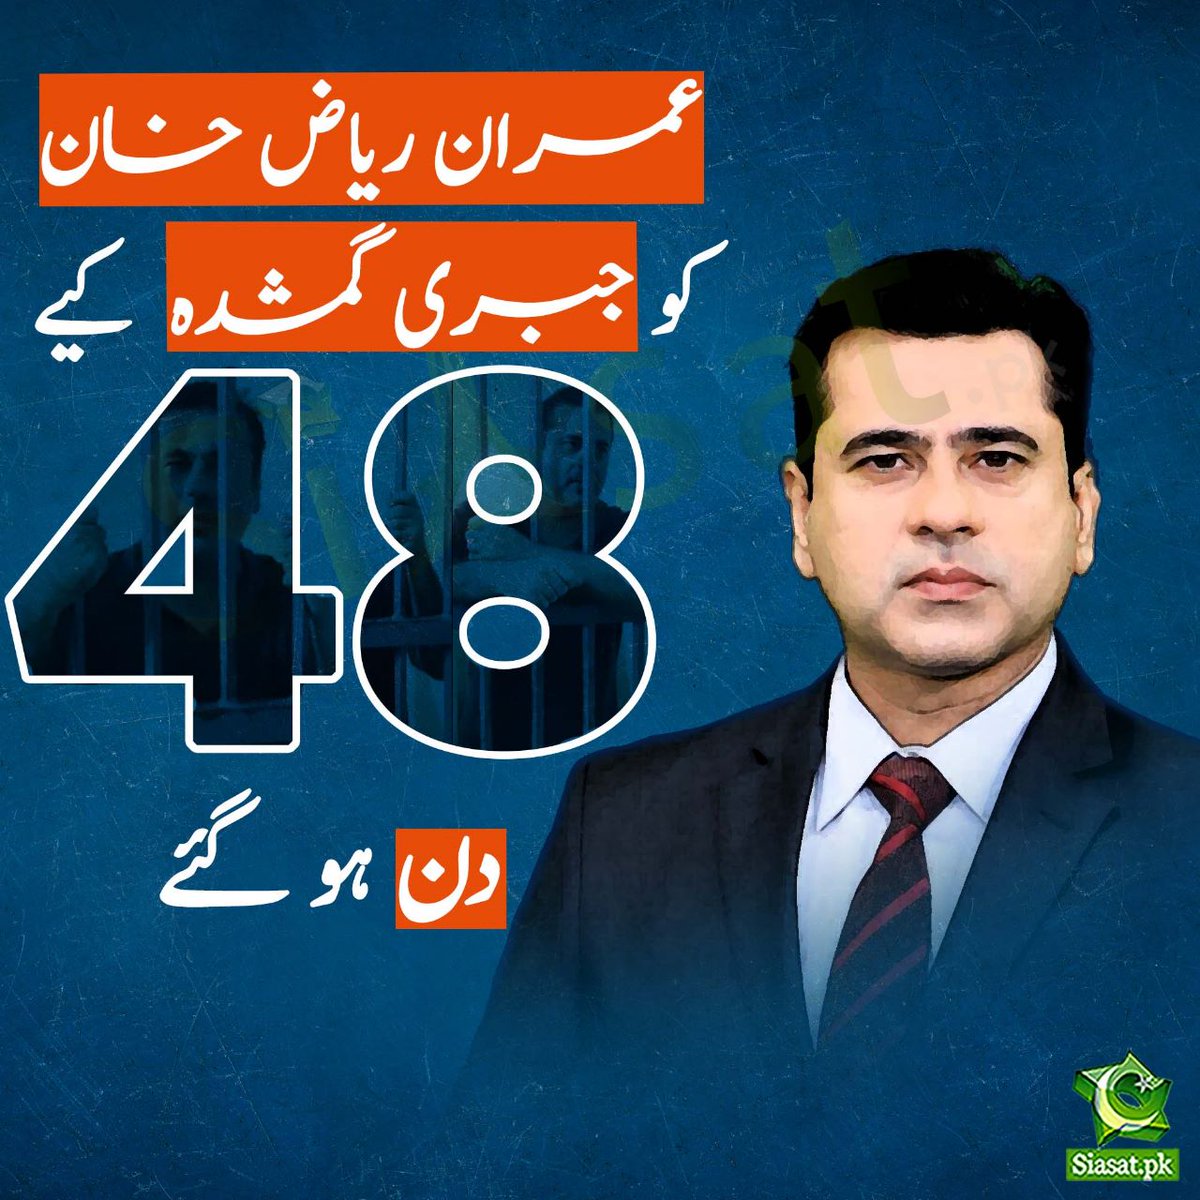 عمران ریاض خان کو جبری گمشدہ کیے 48 دن ہو گئے @ImranRiazKhan #ReleaseImranRiazKhan #releaseimranriaz